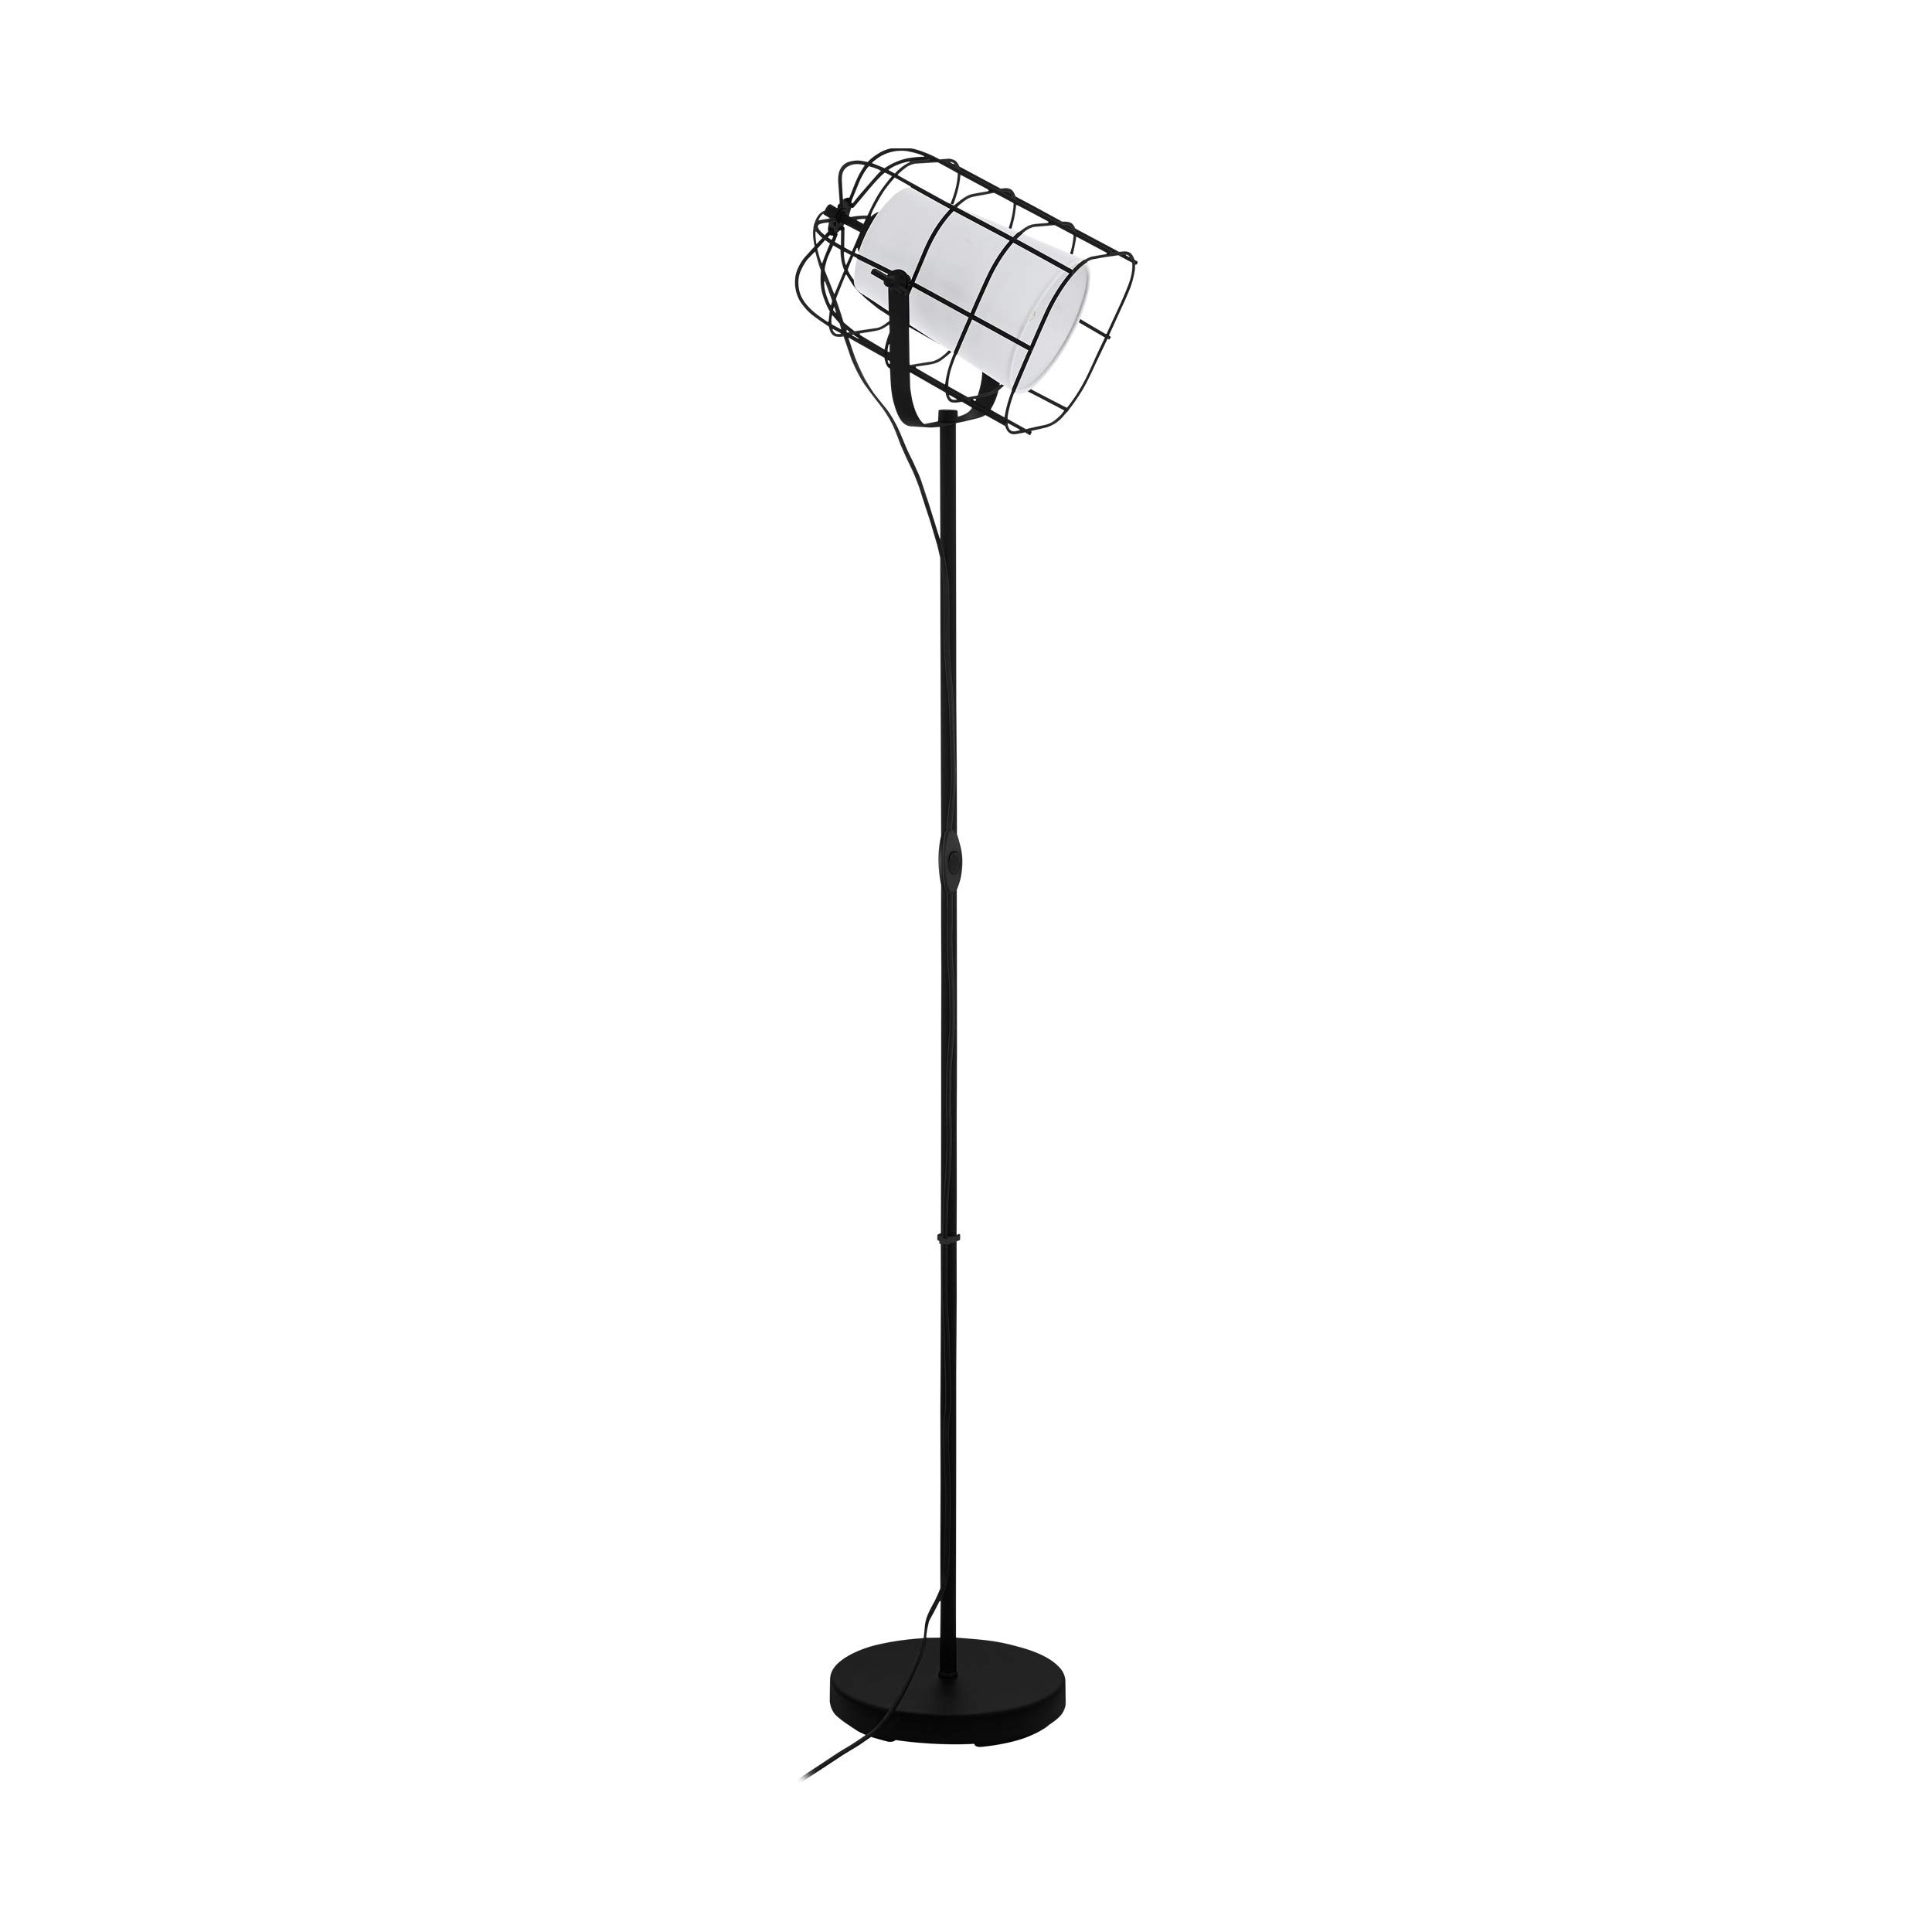 EGLO Stehlampe Bittams, 1 flammige Stehleuchte Vintage, Industrial, Standleuchte aus Stahl und Textil, Wohnzimmerlampe in Schwarz, Weiß, Lampe mit Schalter, E27 Fassung